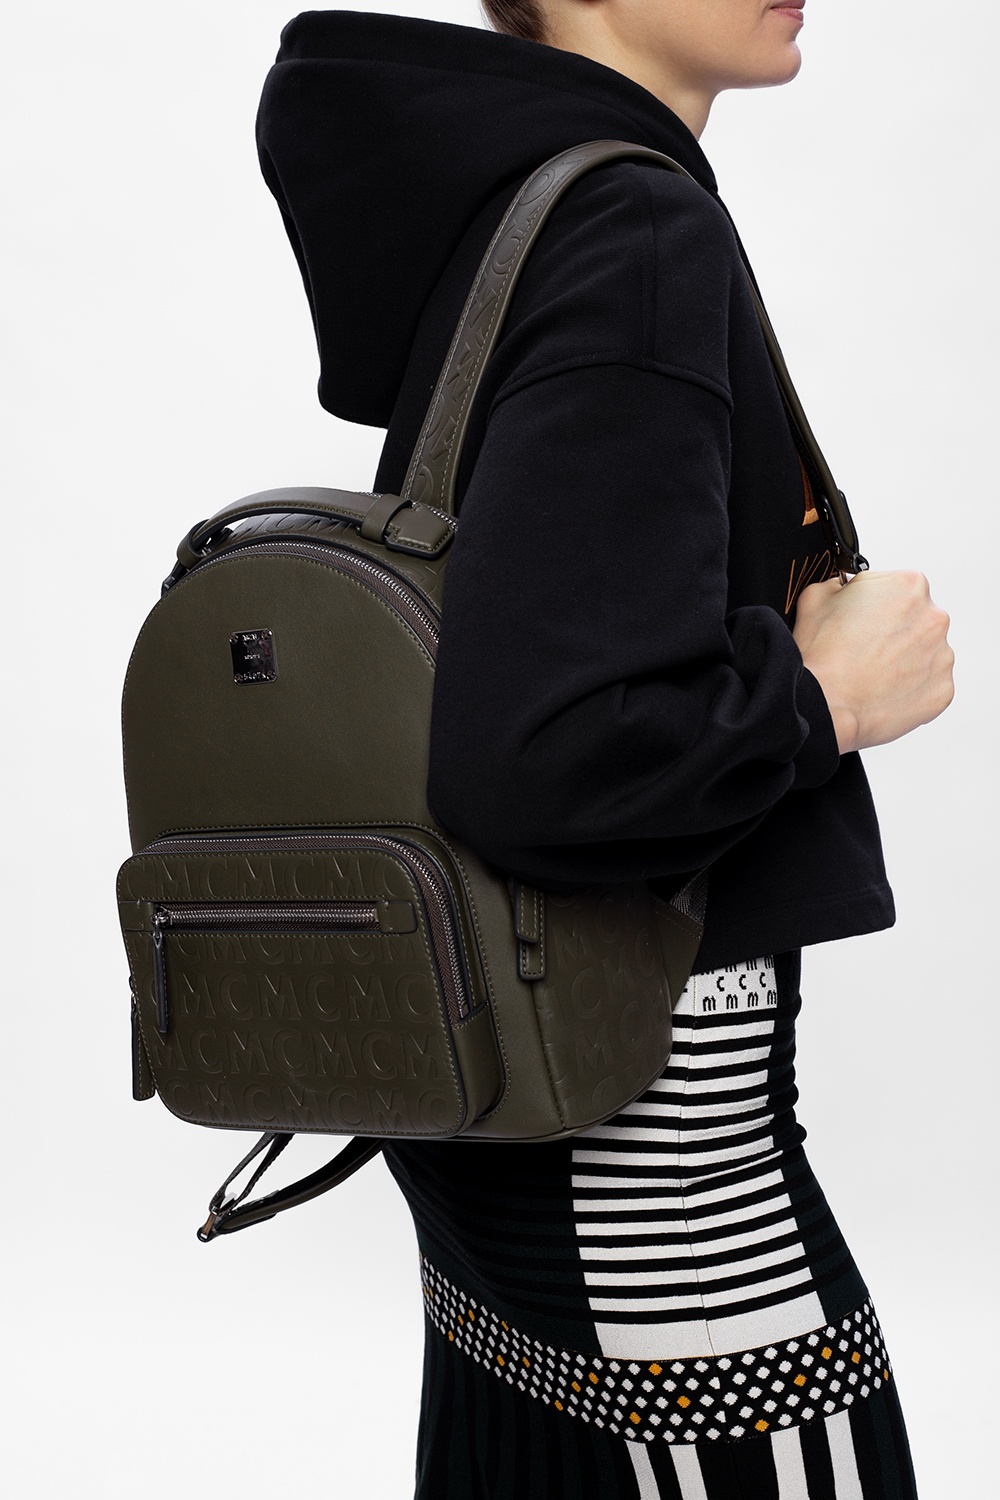 MCM Backpacks – Rucksacks for Women Online – Farfetch